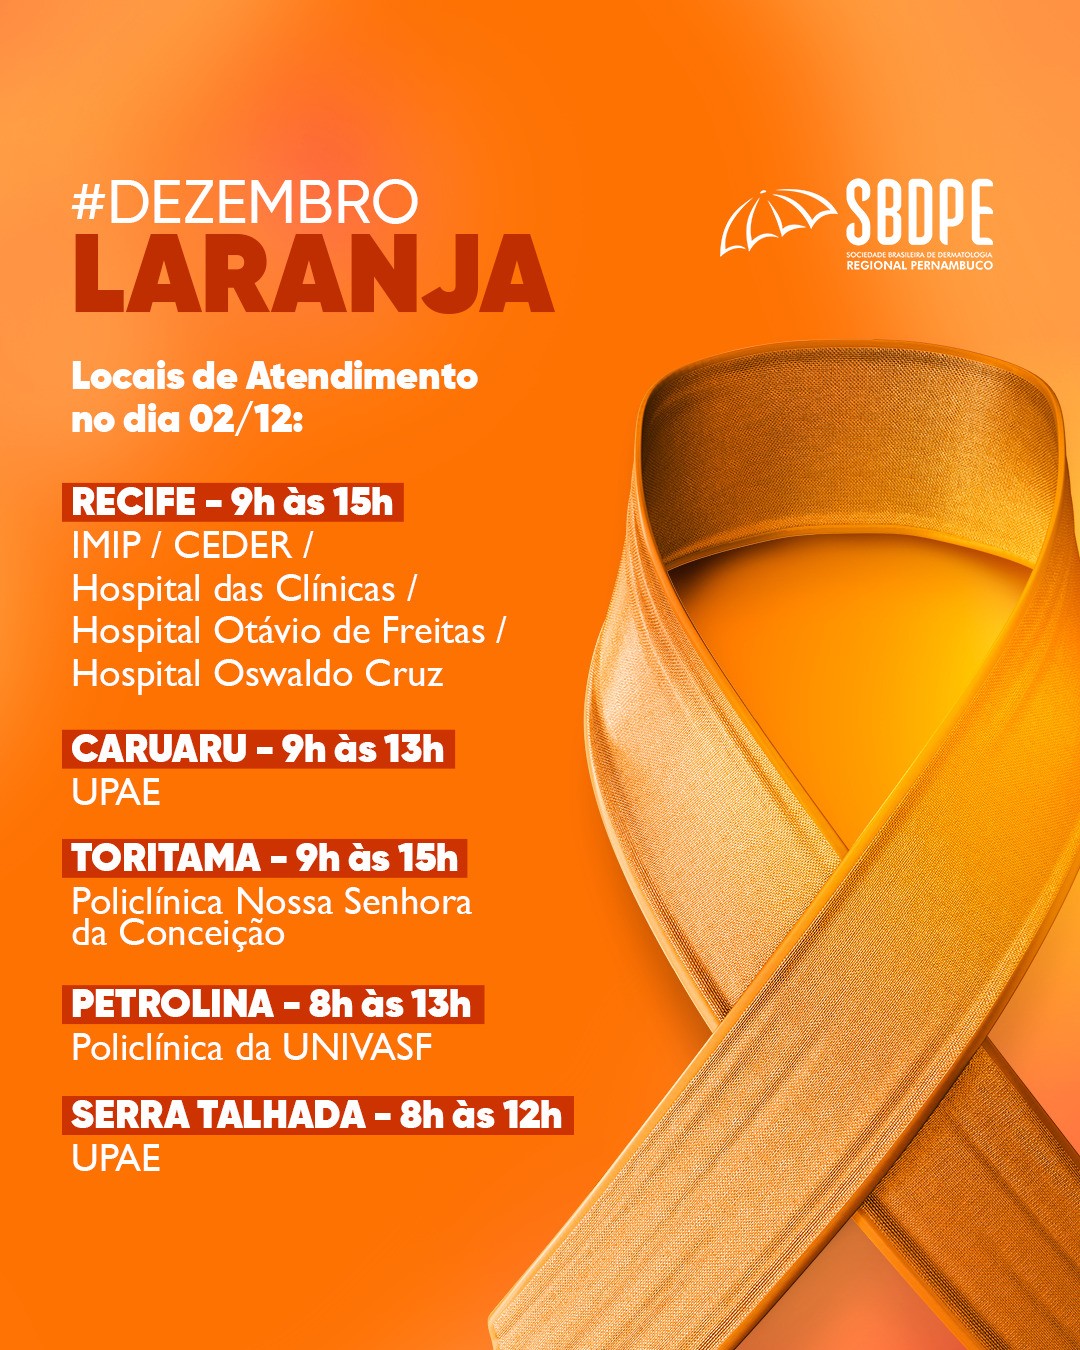 Sociedade Brasileira de Dermatologia realiza ação gratuita no sábado (2) em Caruaru, Toritama e Serra Talhada